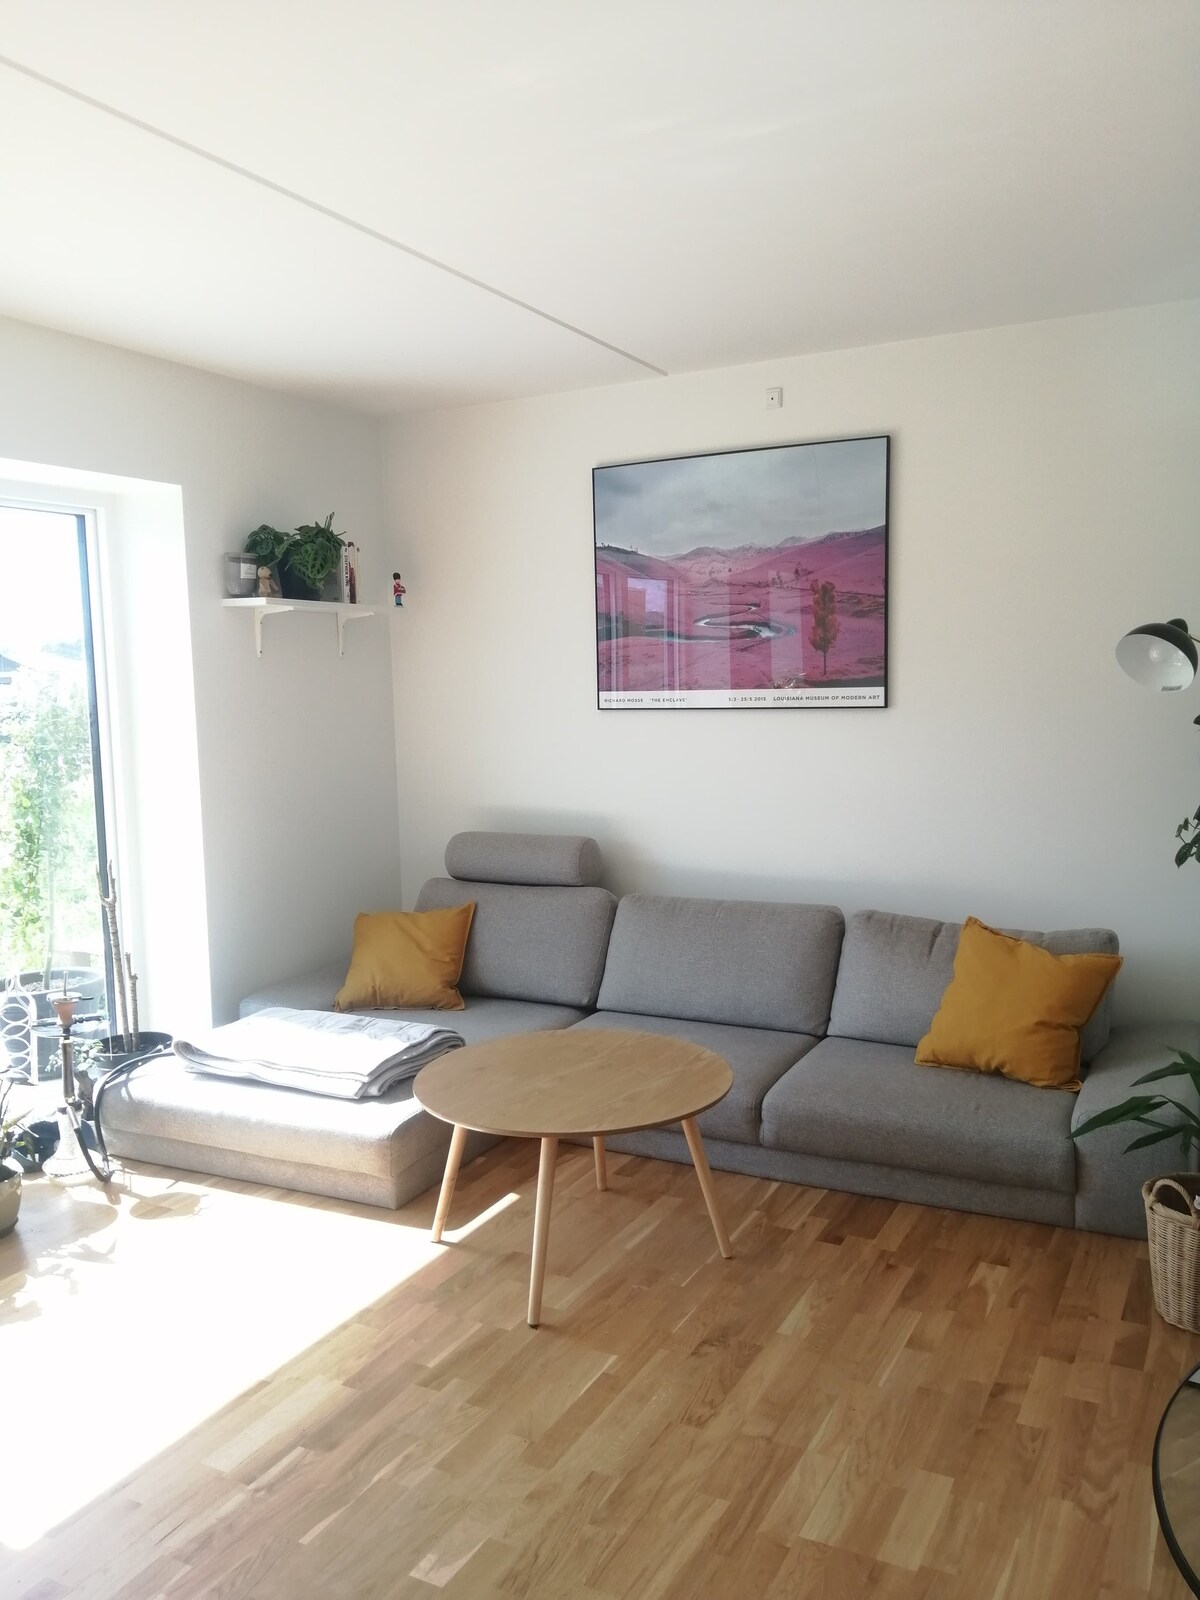 Brændekilde Vacation Rentals & Homes - Denmark | Airbnb